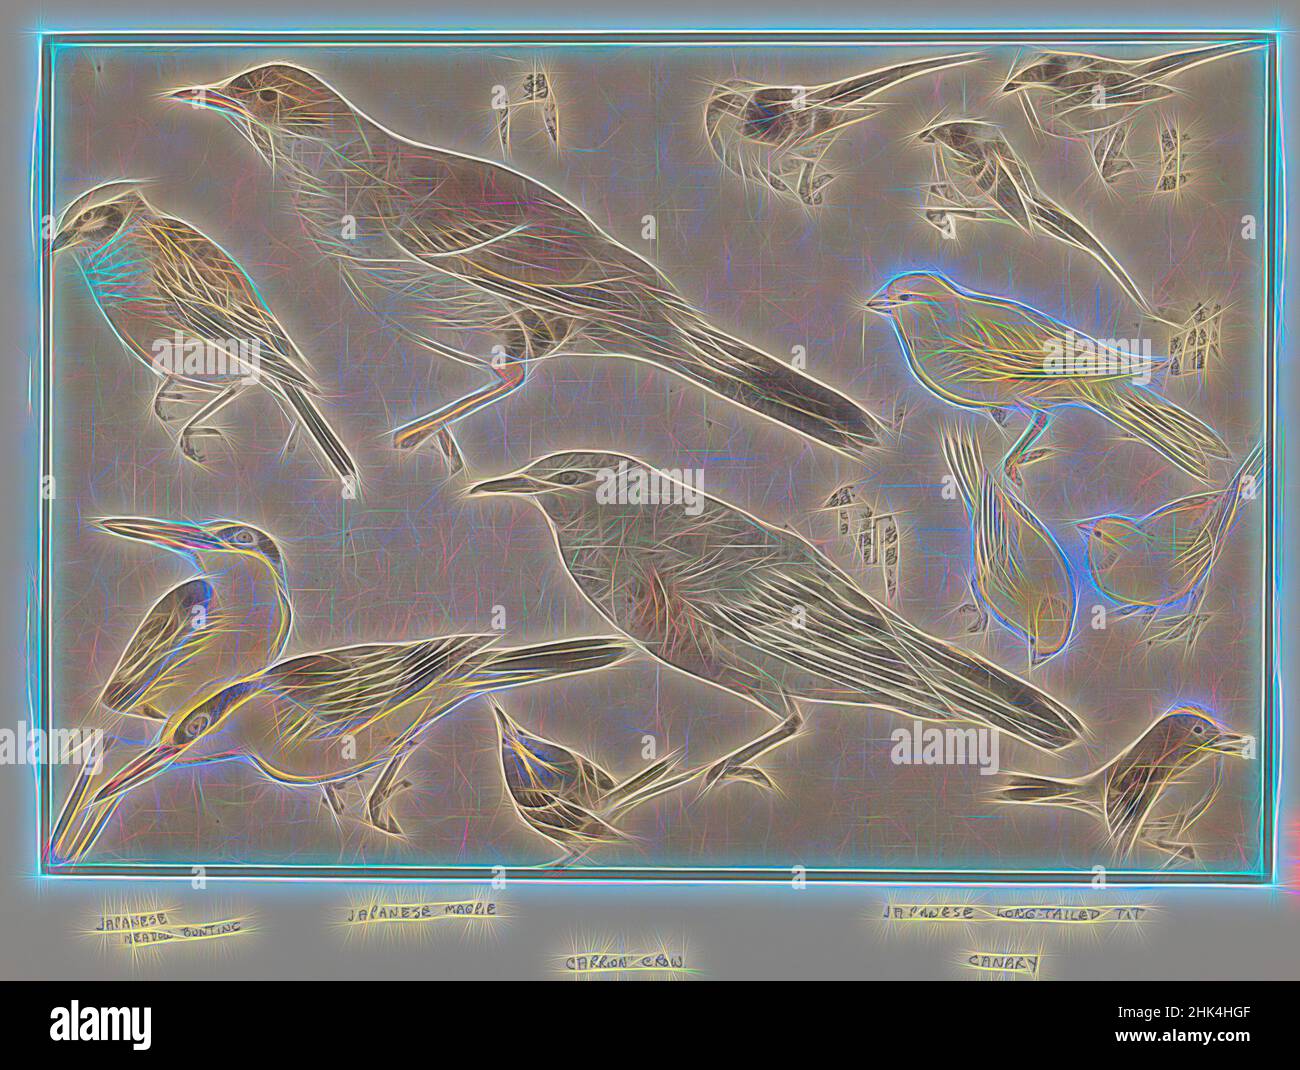 Inspirado por aves en estilo Okyo, escuela Shingo, estampado de color Woodblock, Japón, 10 3/16 x 15 in., 25,9 x 38,1 cm, pájaro, bollos, canario, japonés, magpie, Reimaginado por Artotop. Arte clásico reinventado con un toque moderno. Diseño de brillo cálido y alegre y luminosidad e radiación de rayos de luz. Fotografía inspirada en el surrealismo y el futurismo, que abarca la energía dinámica de la tecnología moderna, el movimiento, la velocidad y la revolución de la cultura Foto de stock